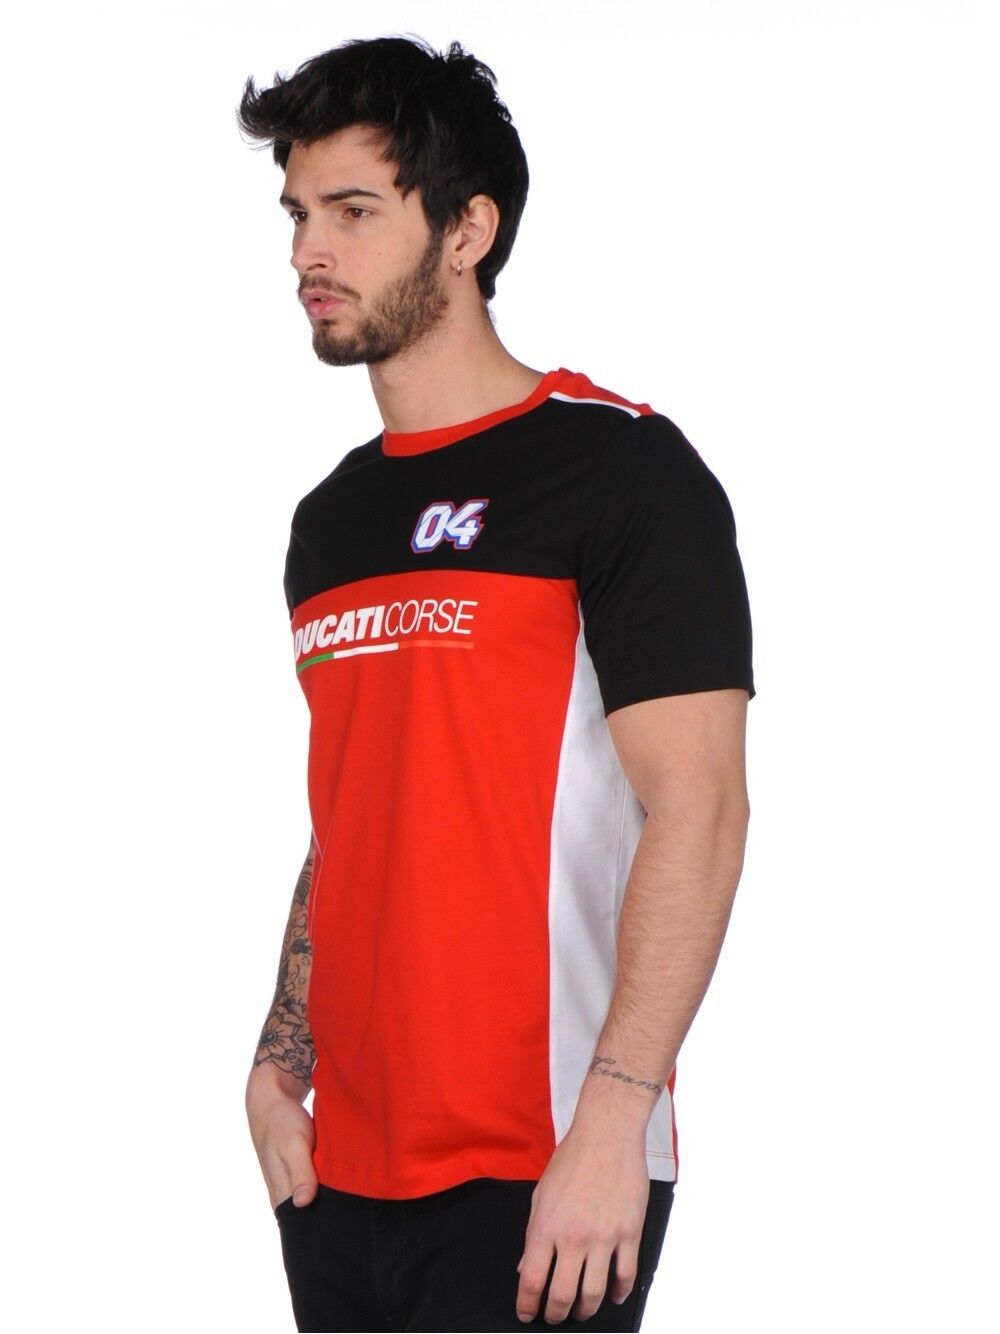 Official Andrea Dovizioso Ducati Corse Dual T'shirt - 17 36018